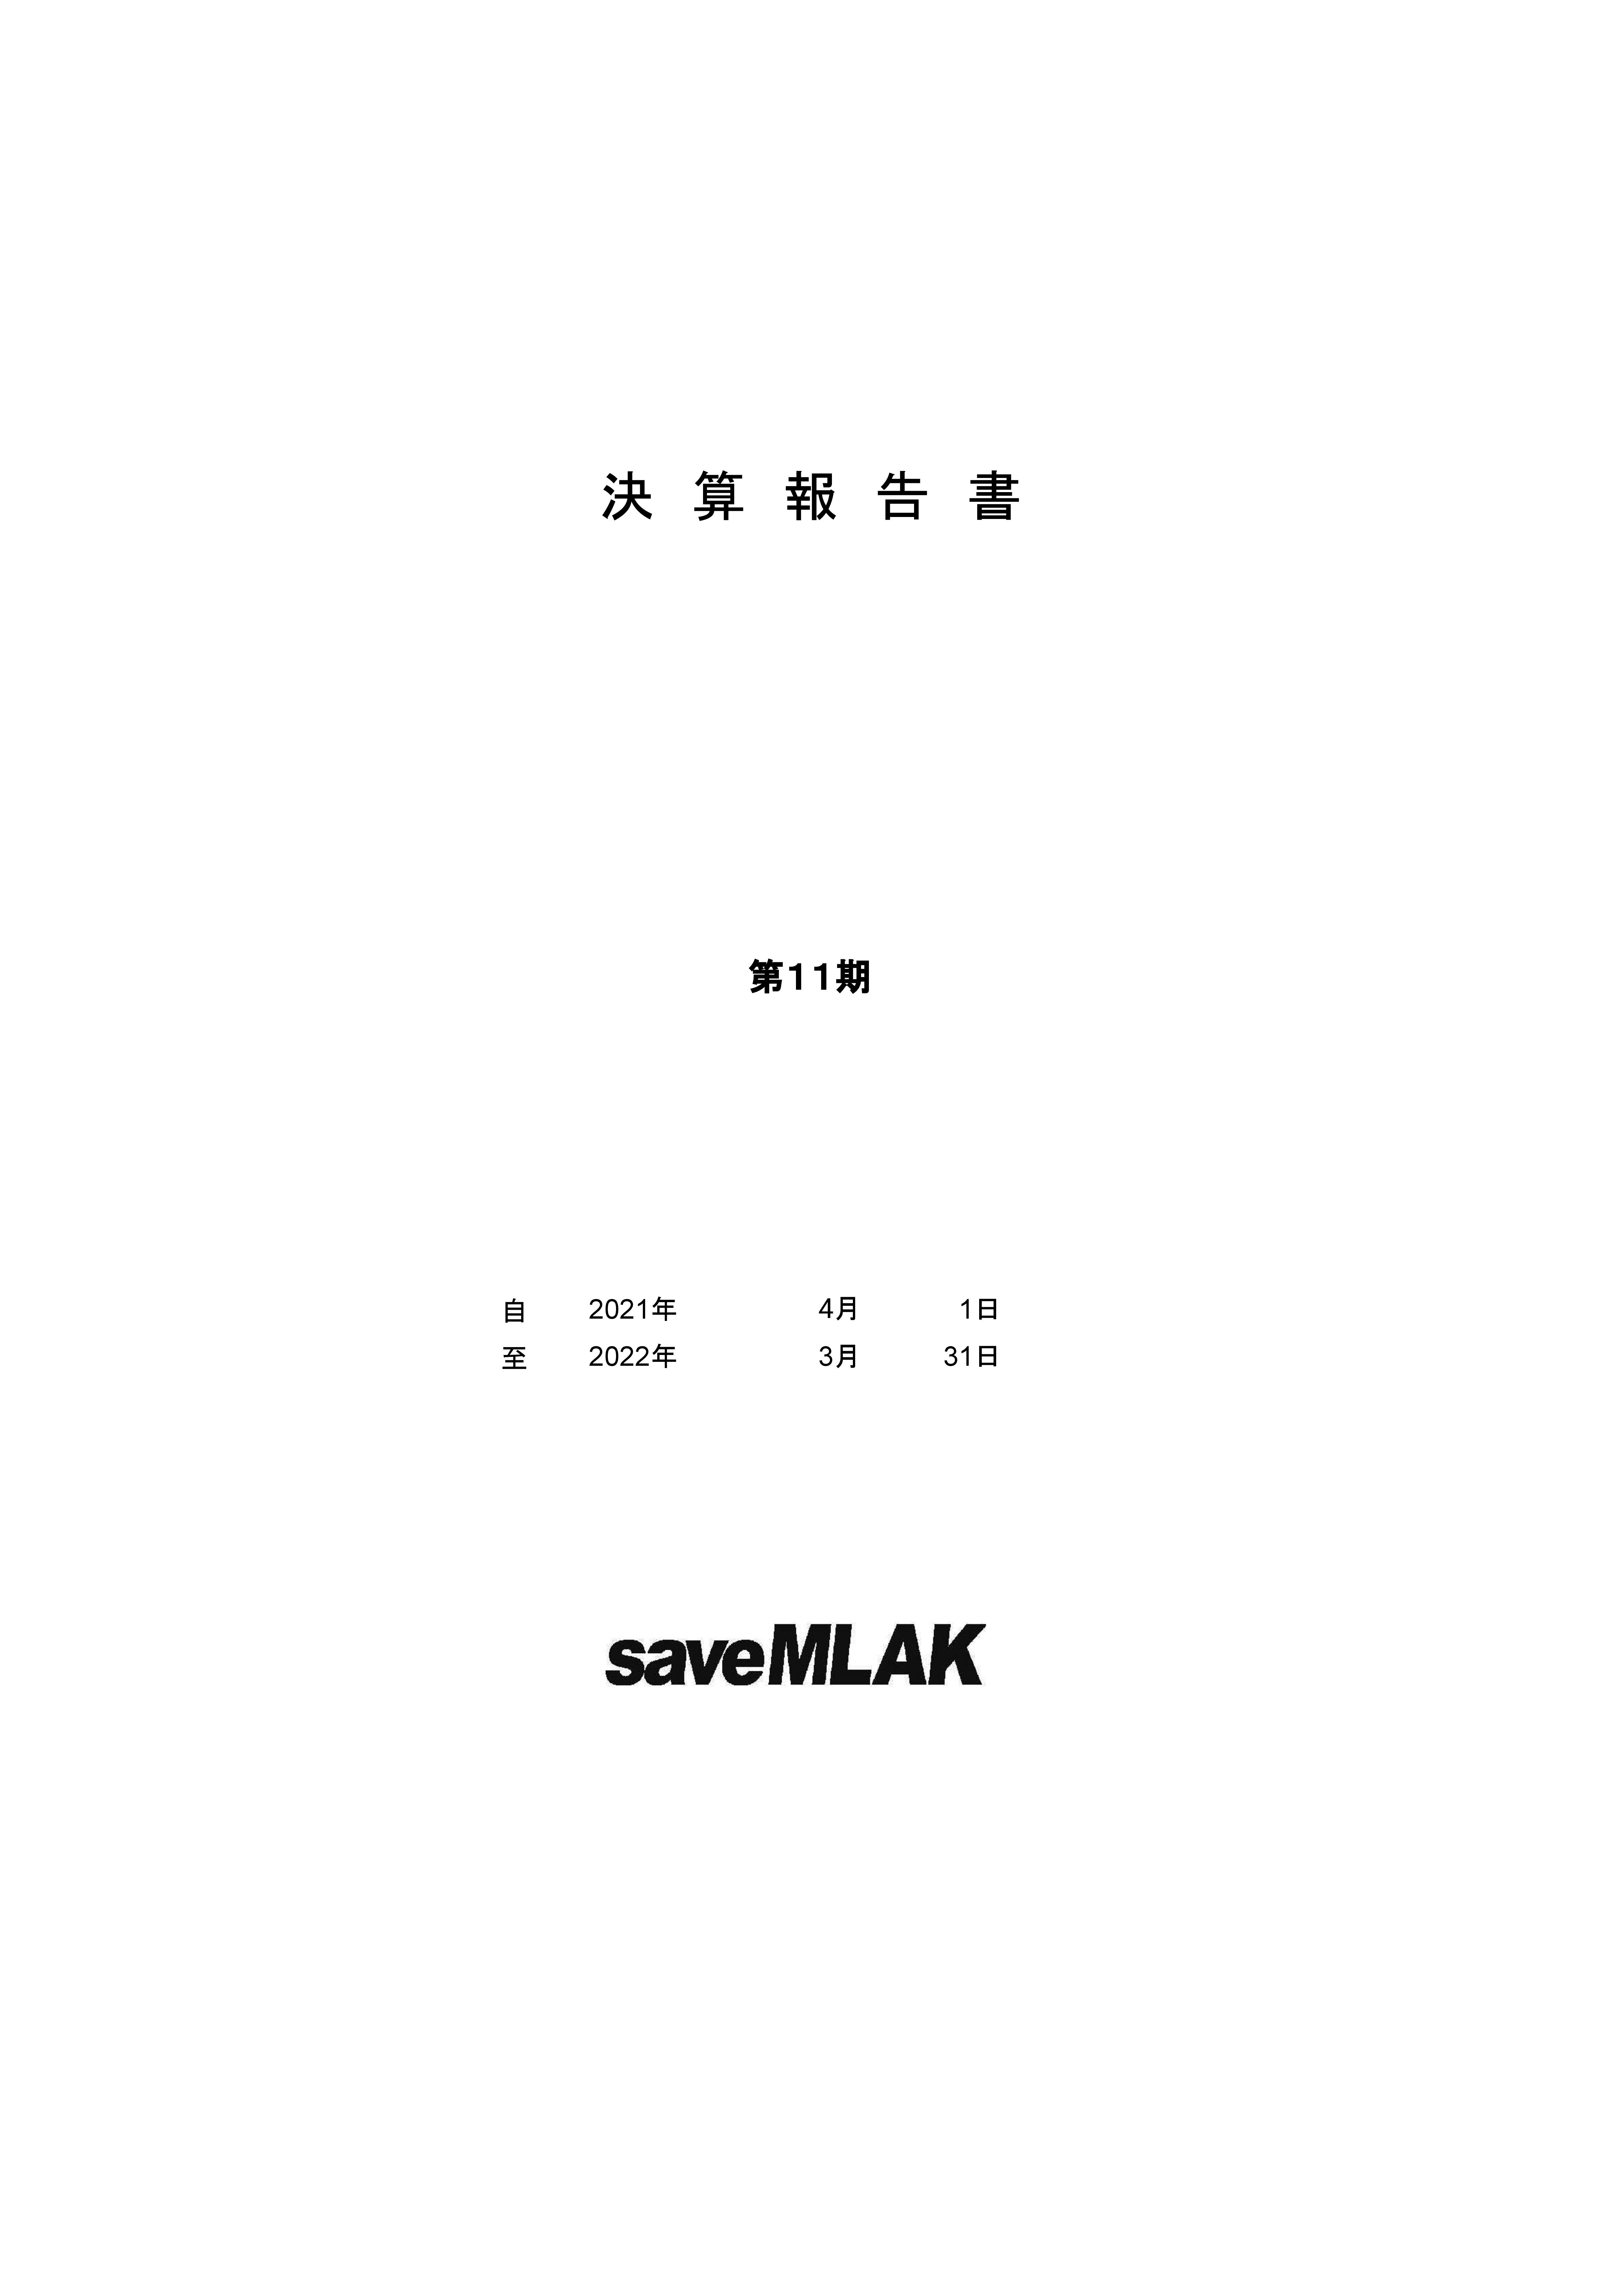 saveMLAK21年度決算報告書 表紙.jpg